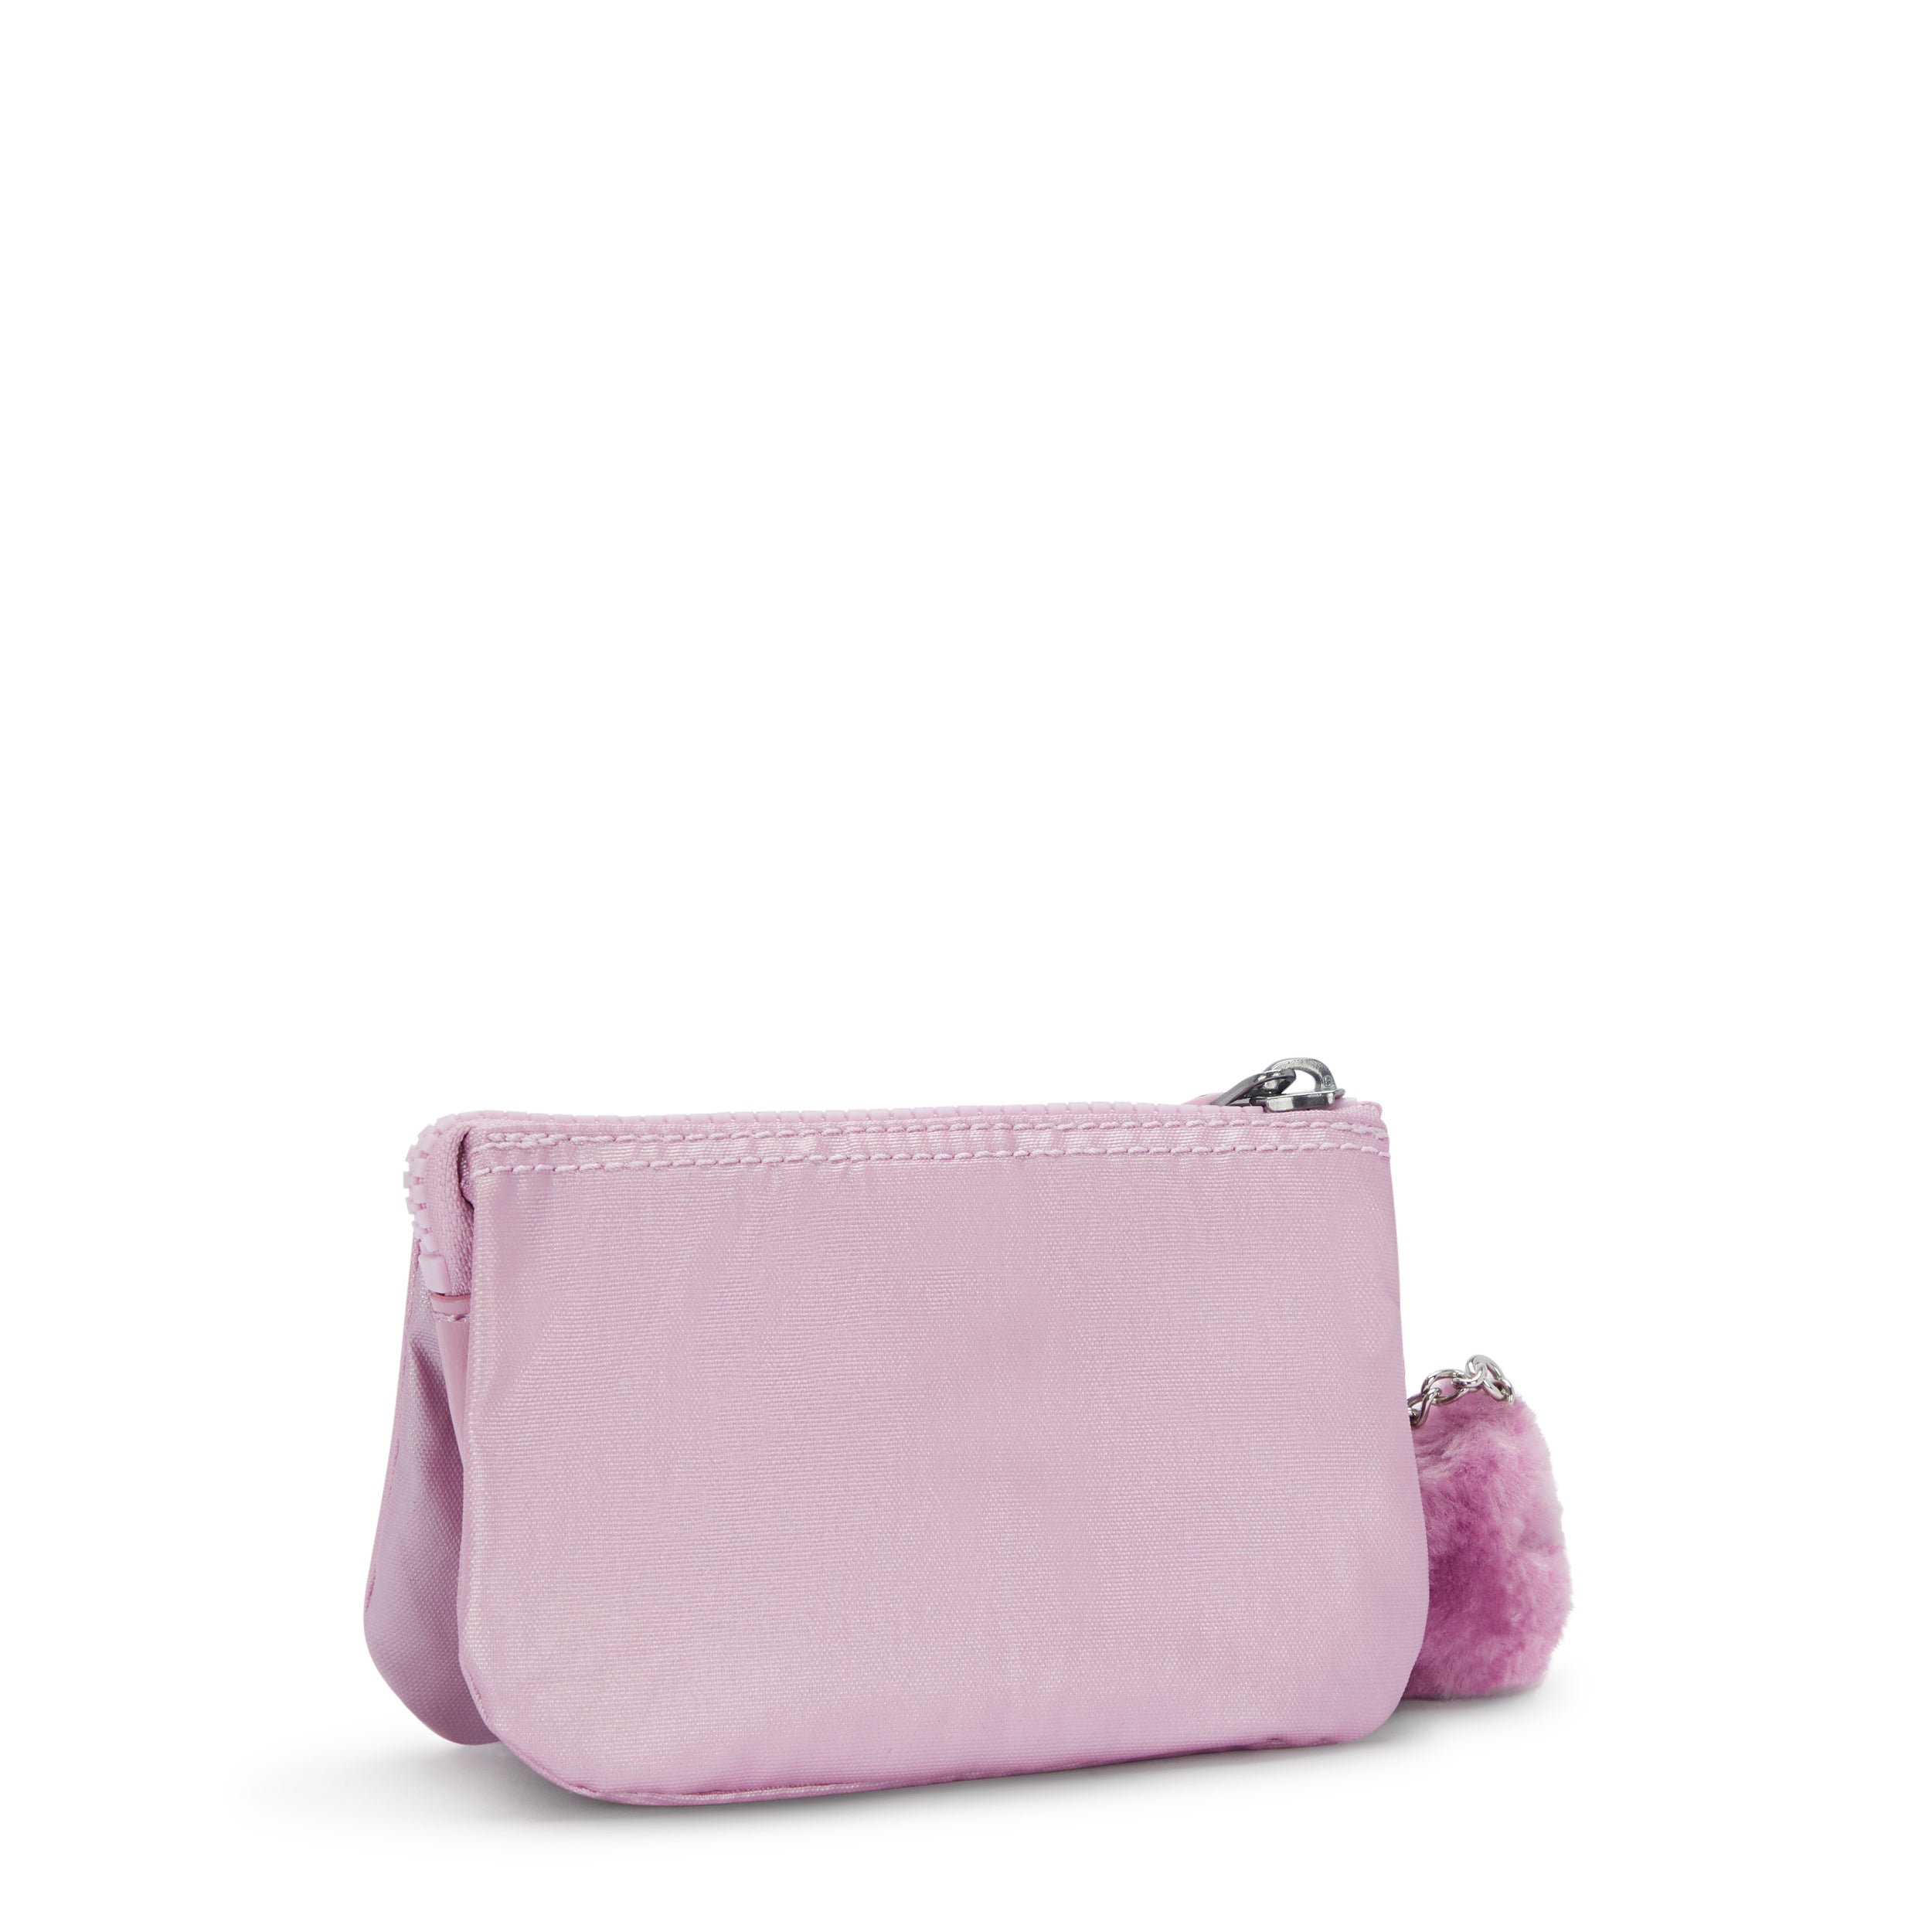 KIPLING-Creativity S-Small purse-Metallic Lilac-15205-F4D